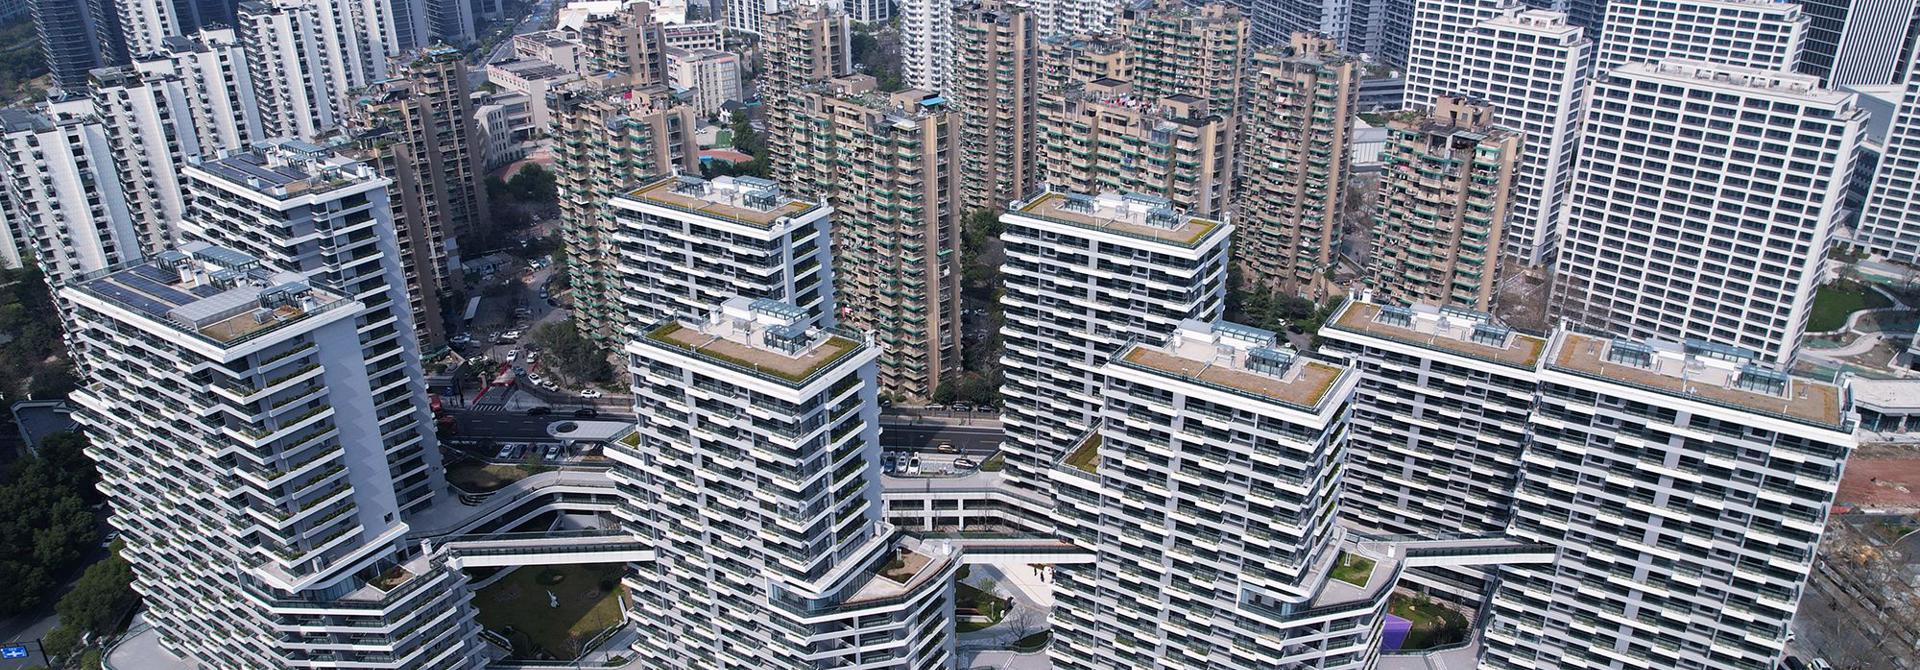 Gói giải cứu bất động sản mới của Trung Quốc  bị cho là "muối bỏ bể"